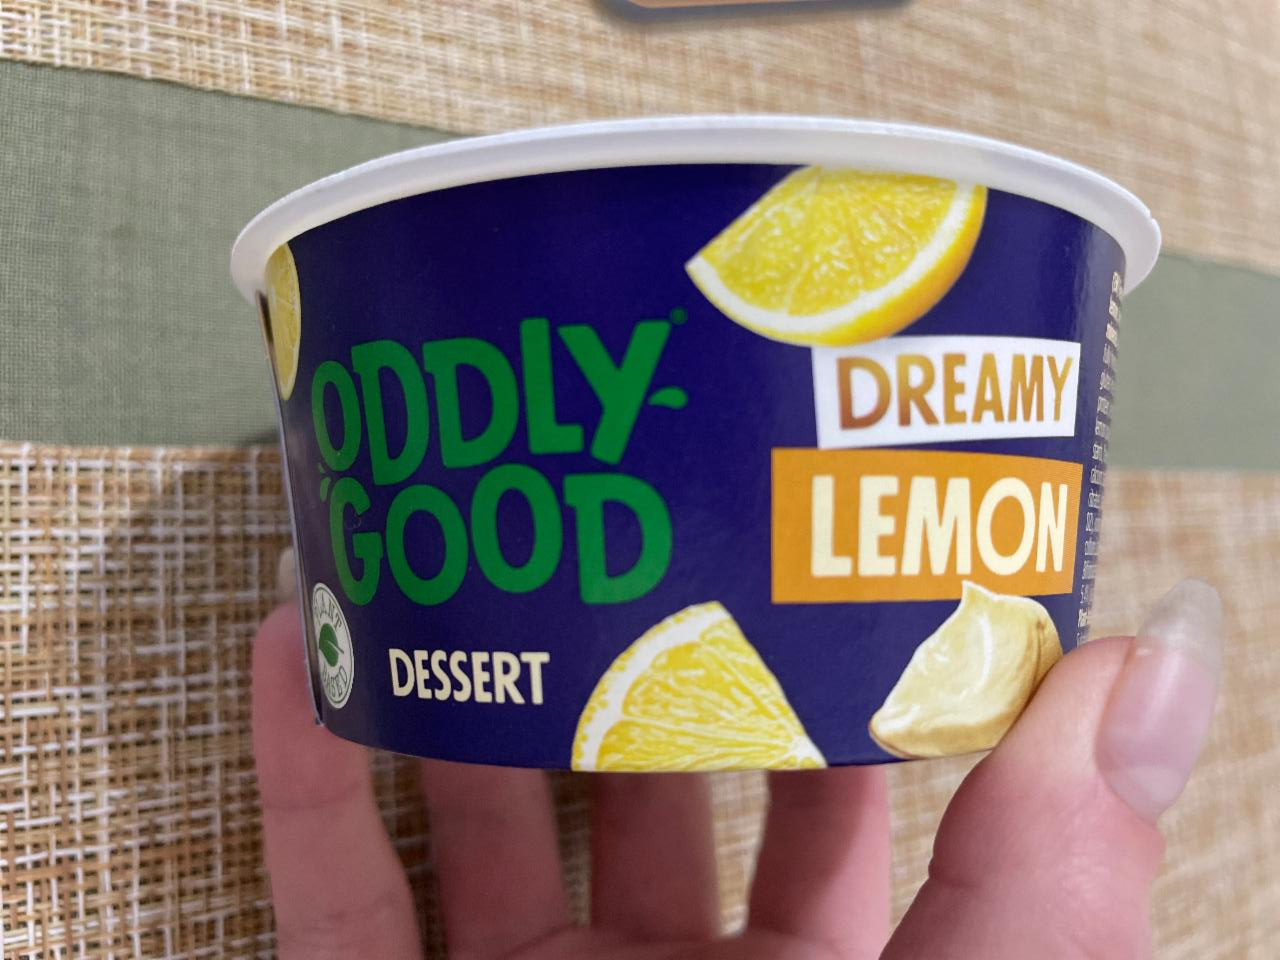 Фото - дессерт со вкусои лимона Oddly good Valio